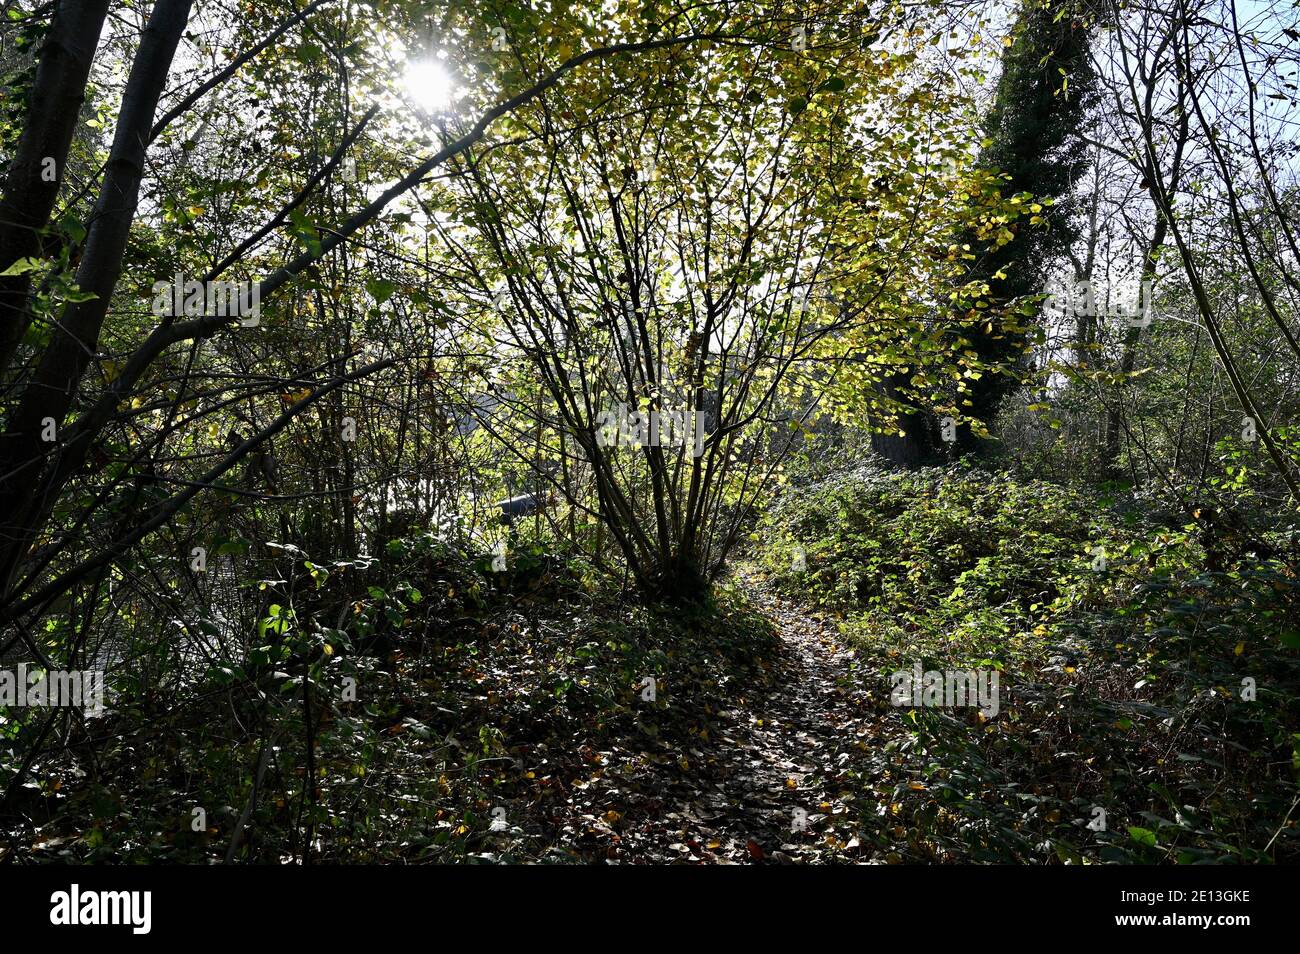 Feuilles d'automne. Foots Cray Meadows, Sidcup, Kent. ROYAUME-UNI Banque D'Images